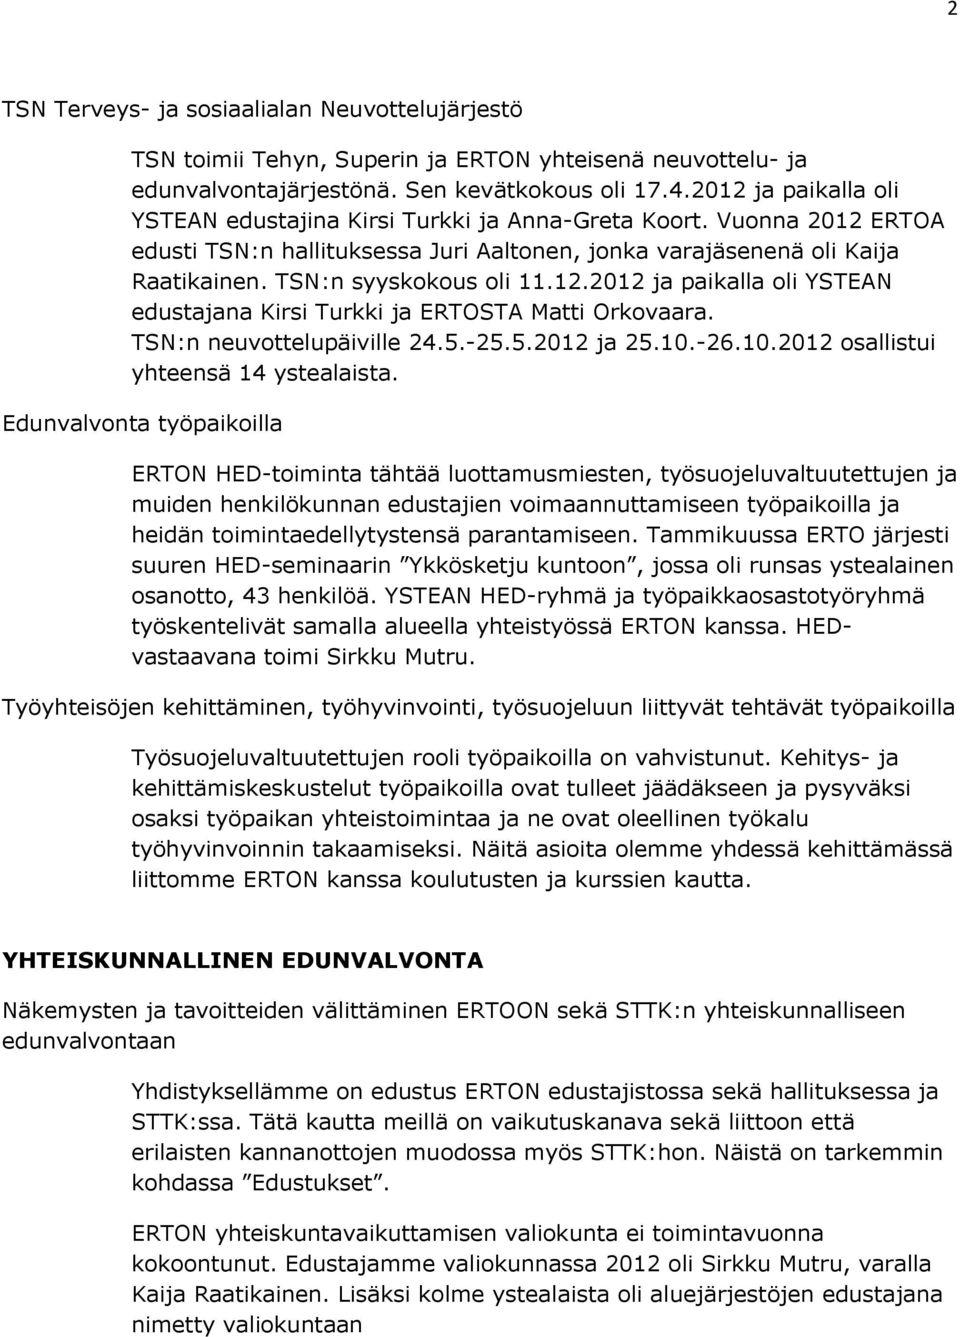 12.2012 ja paikalla oli YSTEAN edustajana Kirsi Turkki ja ERTOSTA Matti Orkovaara. TSN:n neuvottelupäiville 24.5.-25.5.2012 ja 25.10.-26.10.2012 osallistui yhteensä 14 ystealaista.